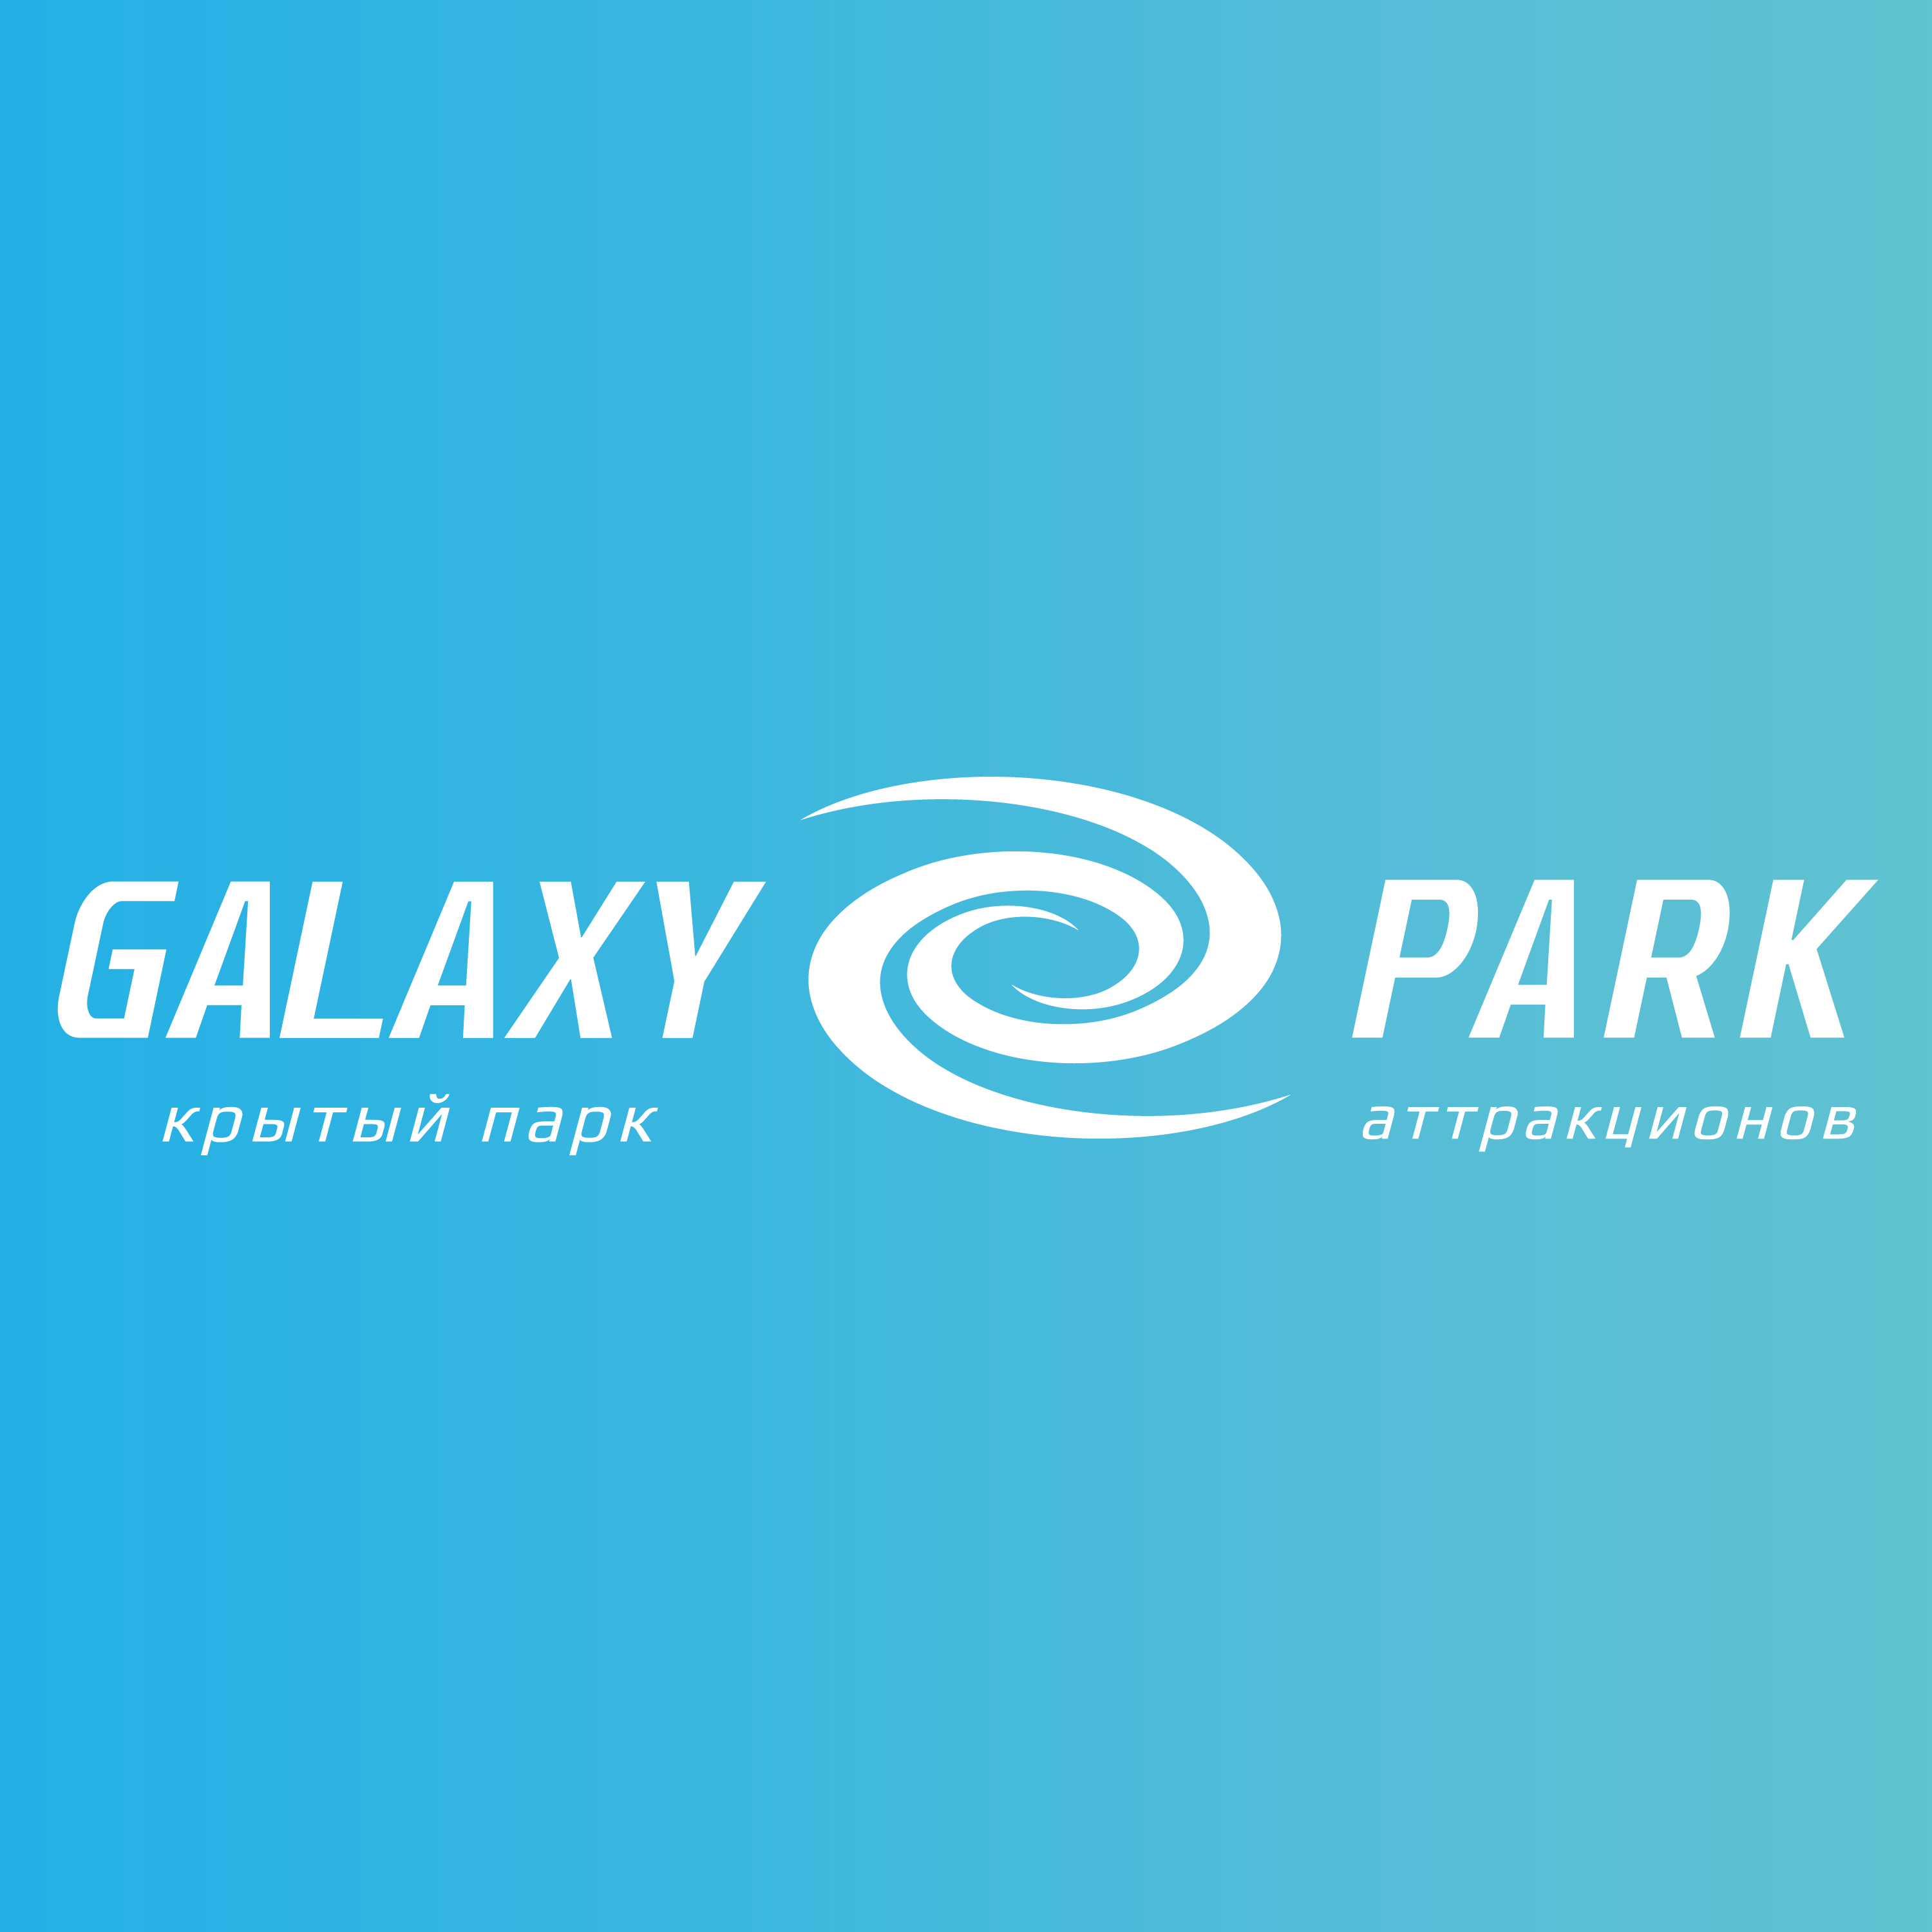 Галакси парк в смоленске